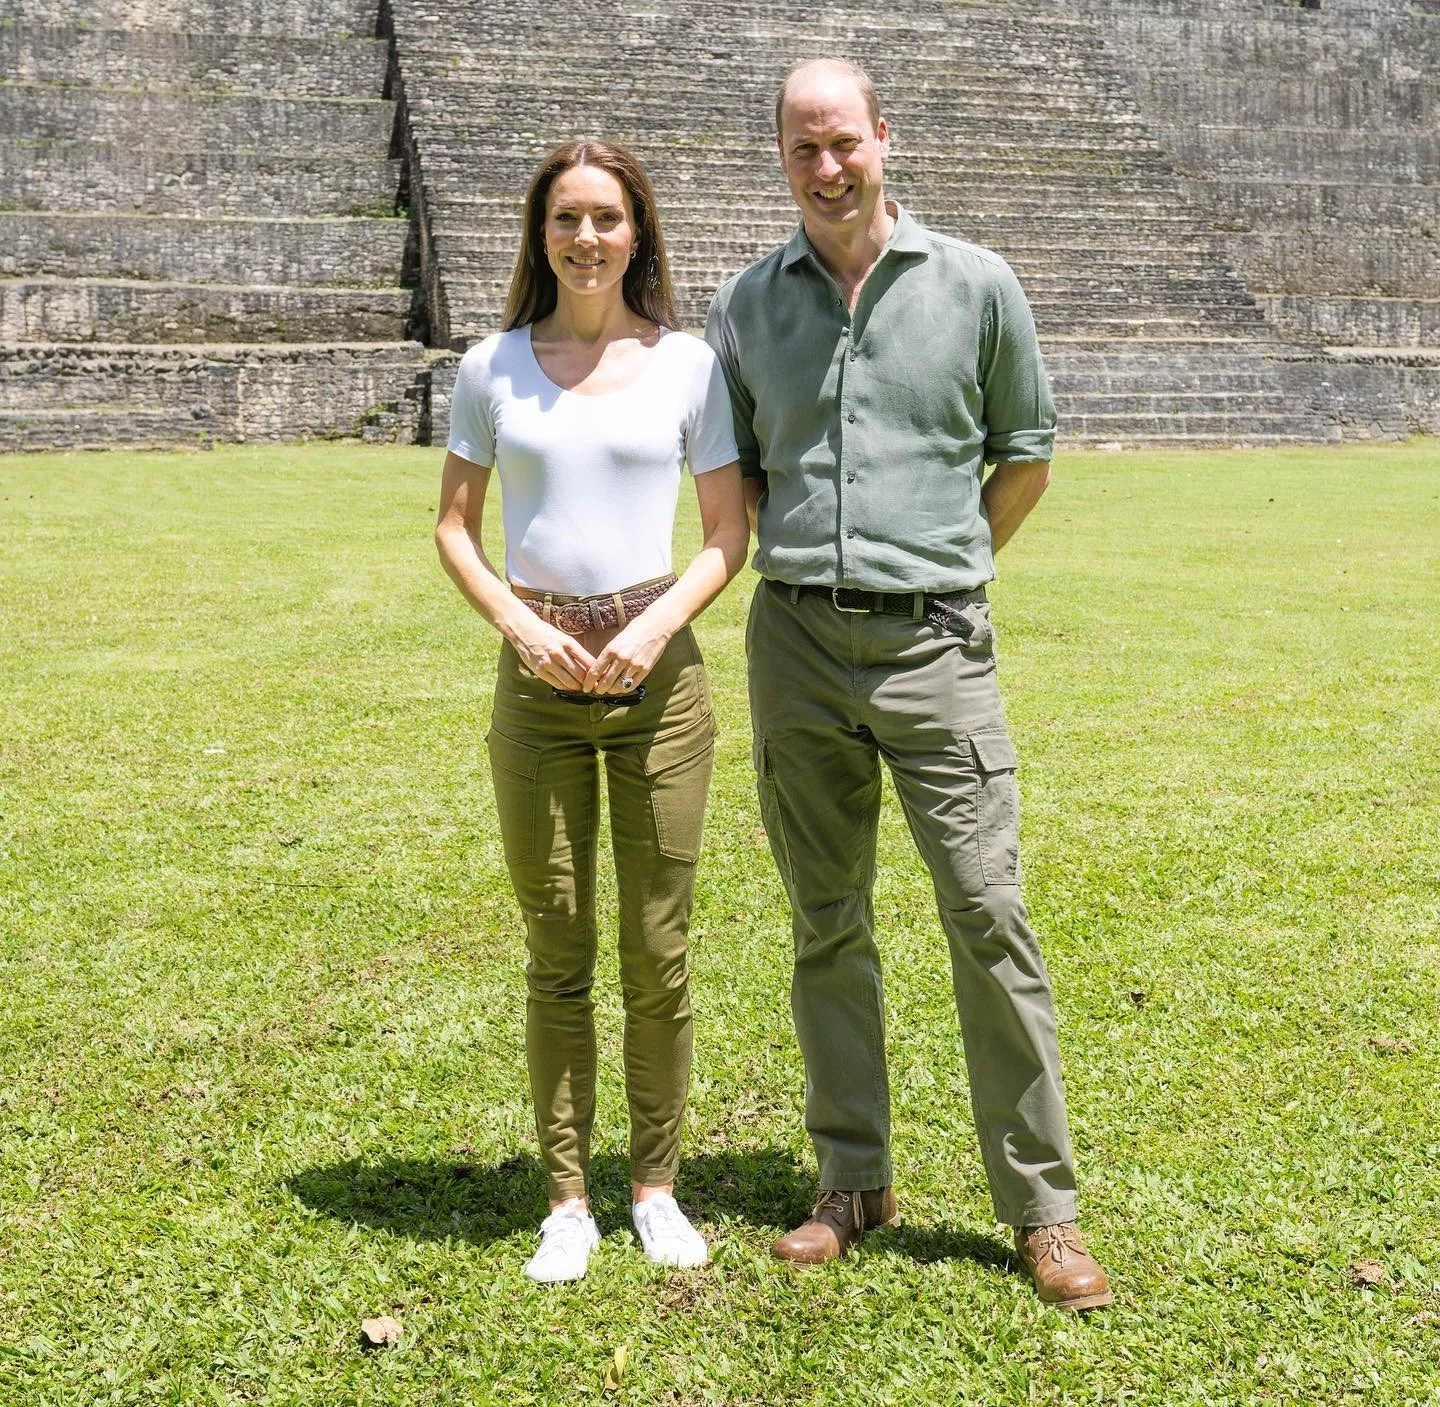 كيت ميدلتون والأمير ويليام خلال جولة بليز في أميركا الوسطى: لوكات متنوعة وعصرية لدوقة كامبردج